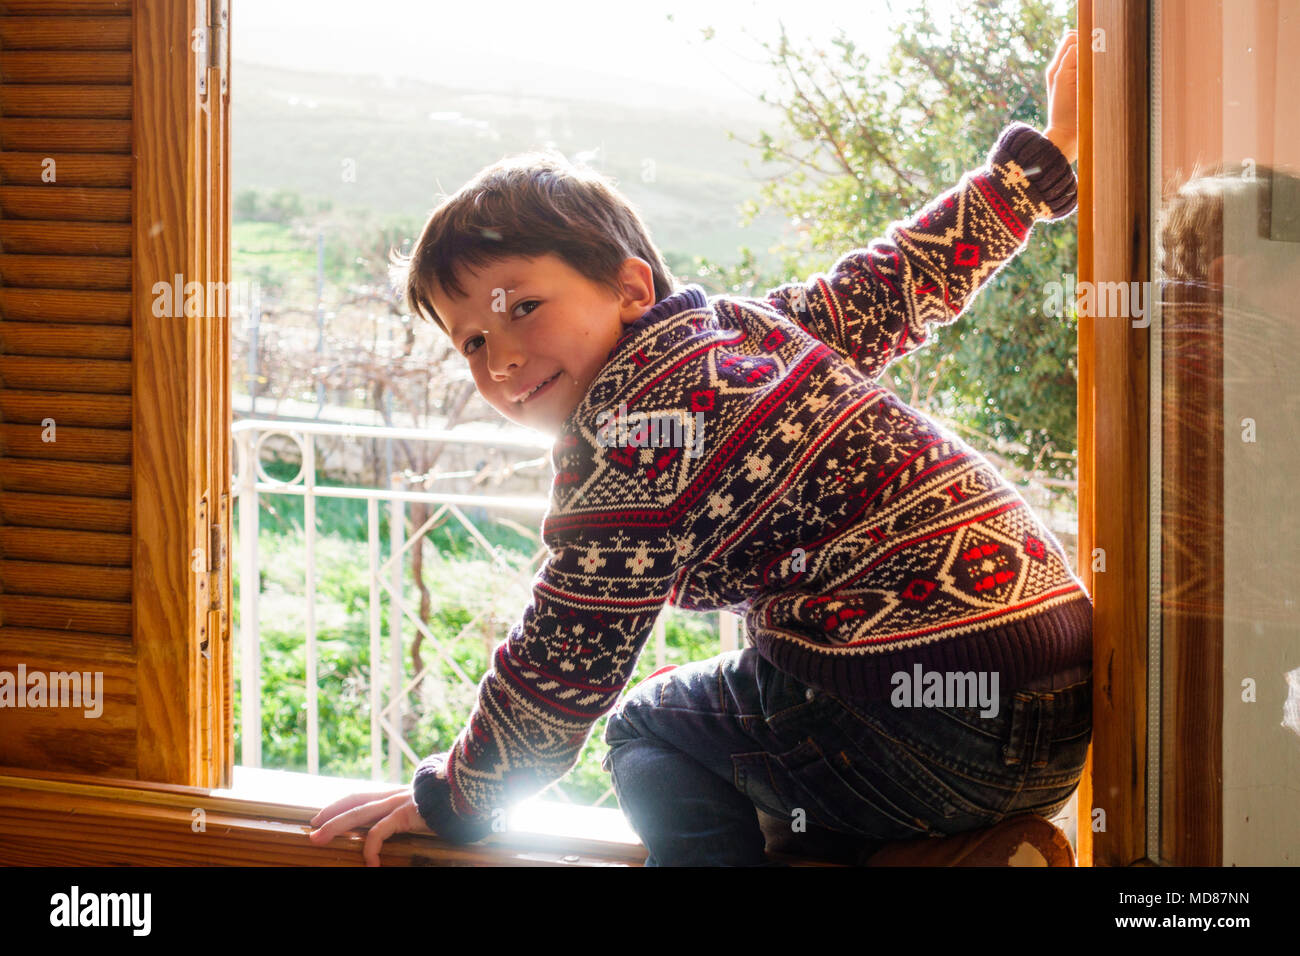 Boy looking at camera, assis sur la fenêtre, Grèce Banque D'Images